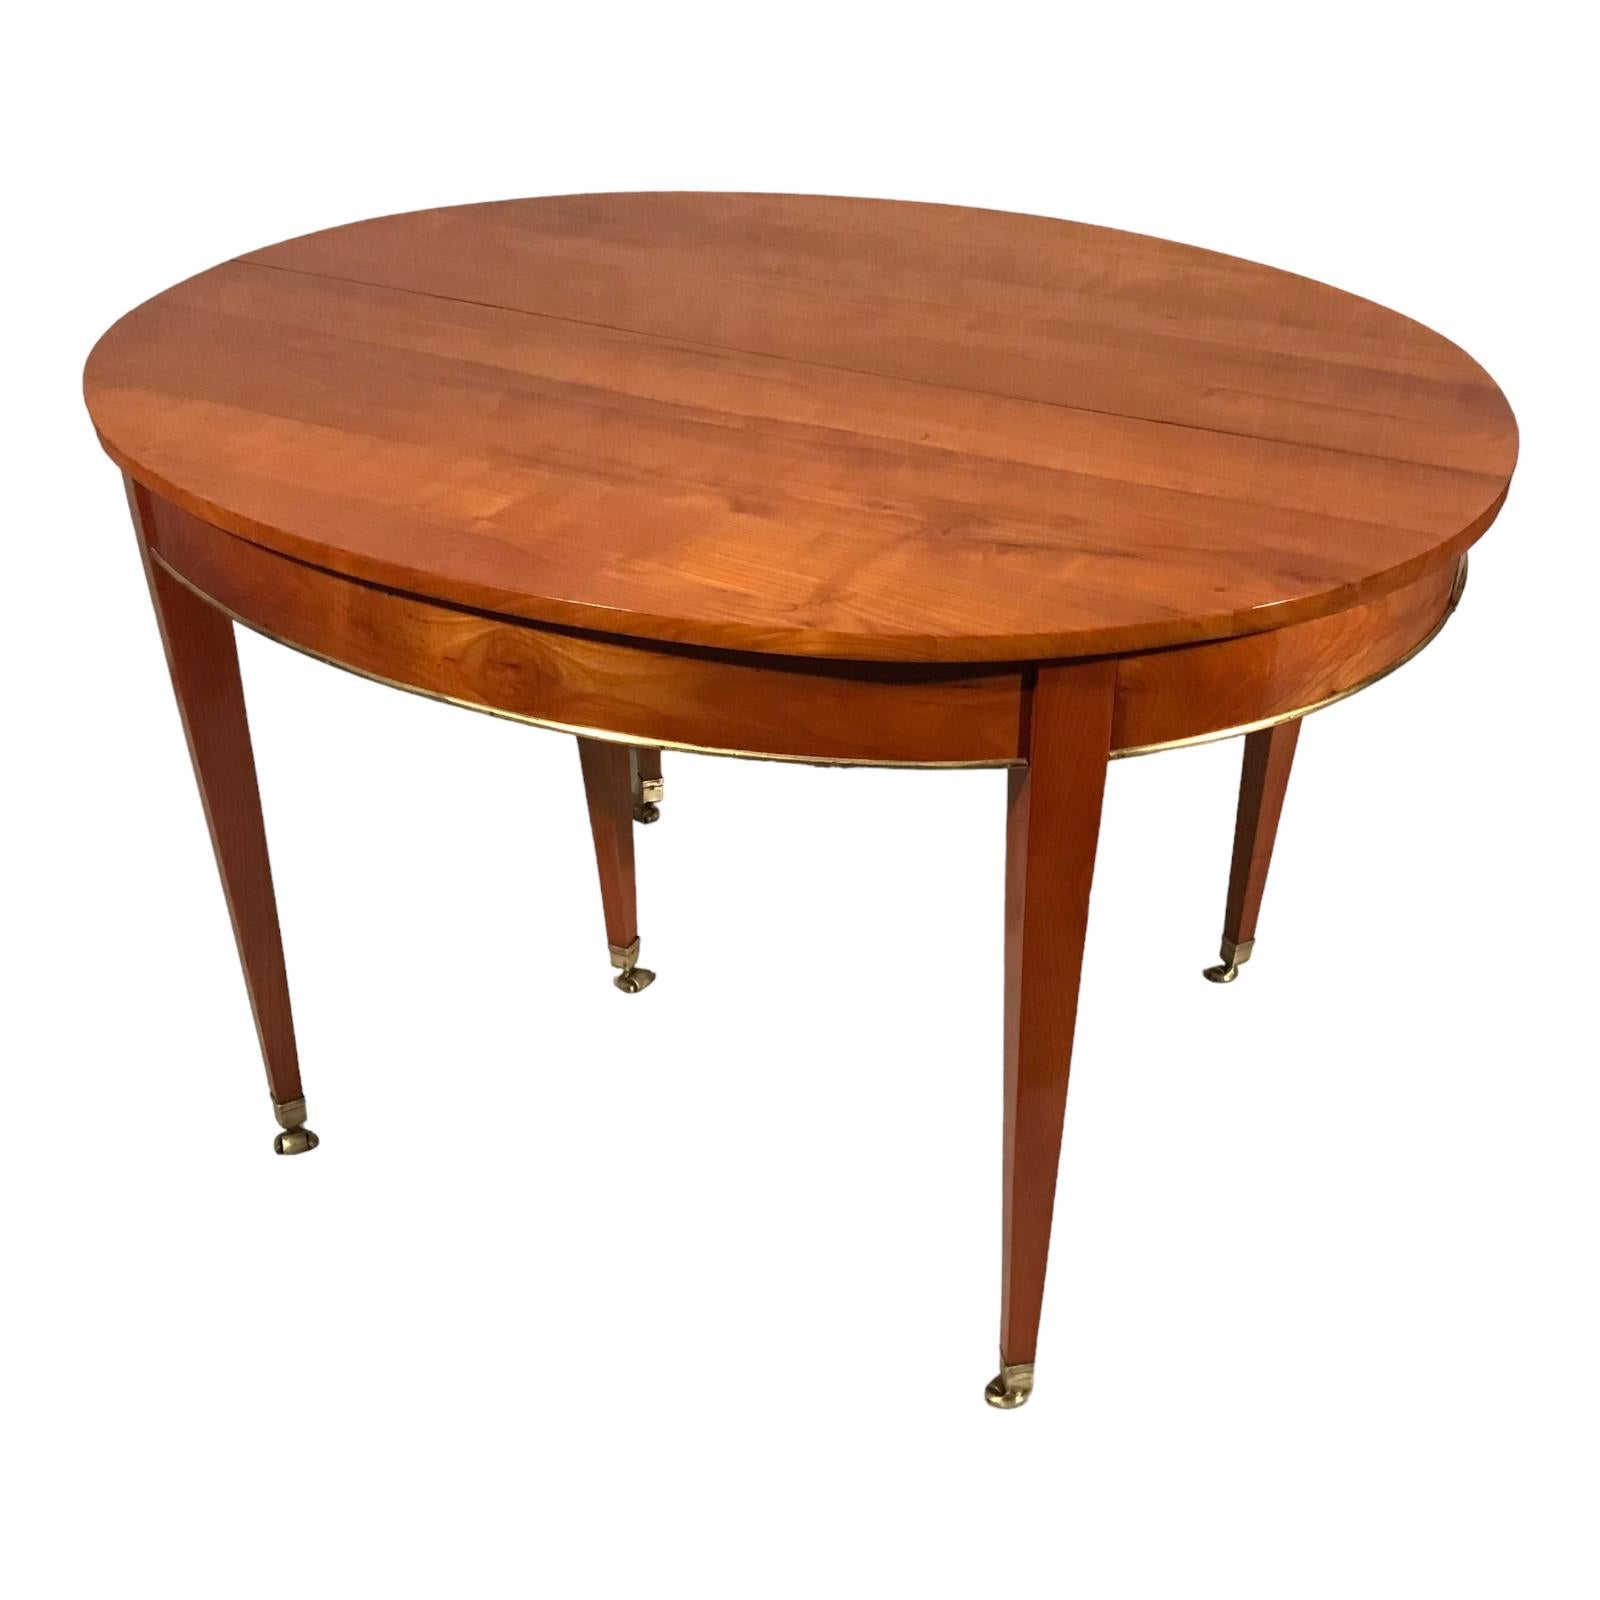 Dieser elegante neoklassizistische Esszimmertisch stammt aus der Mitte des 19. Jahrhunderts und kommt aus Deutschland. Der Tisch hat ein hübsches Kirschbaumfurnier und ist mit einem Messingband an der Schürze versehen. Er steht auf sechs konisch